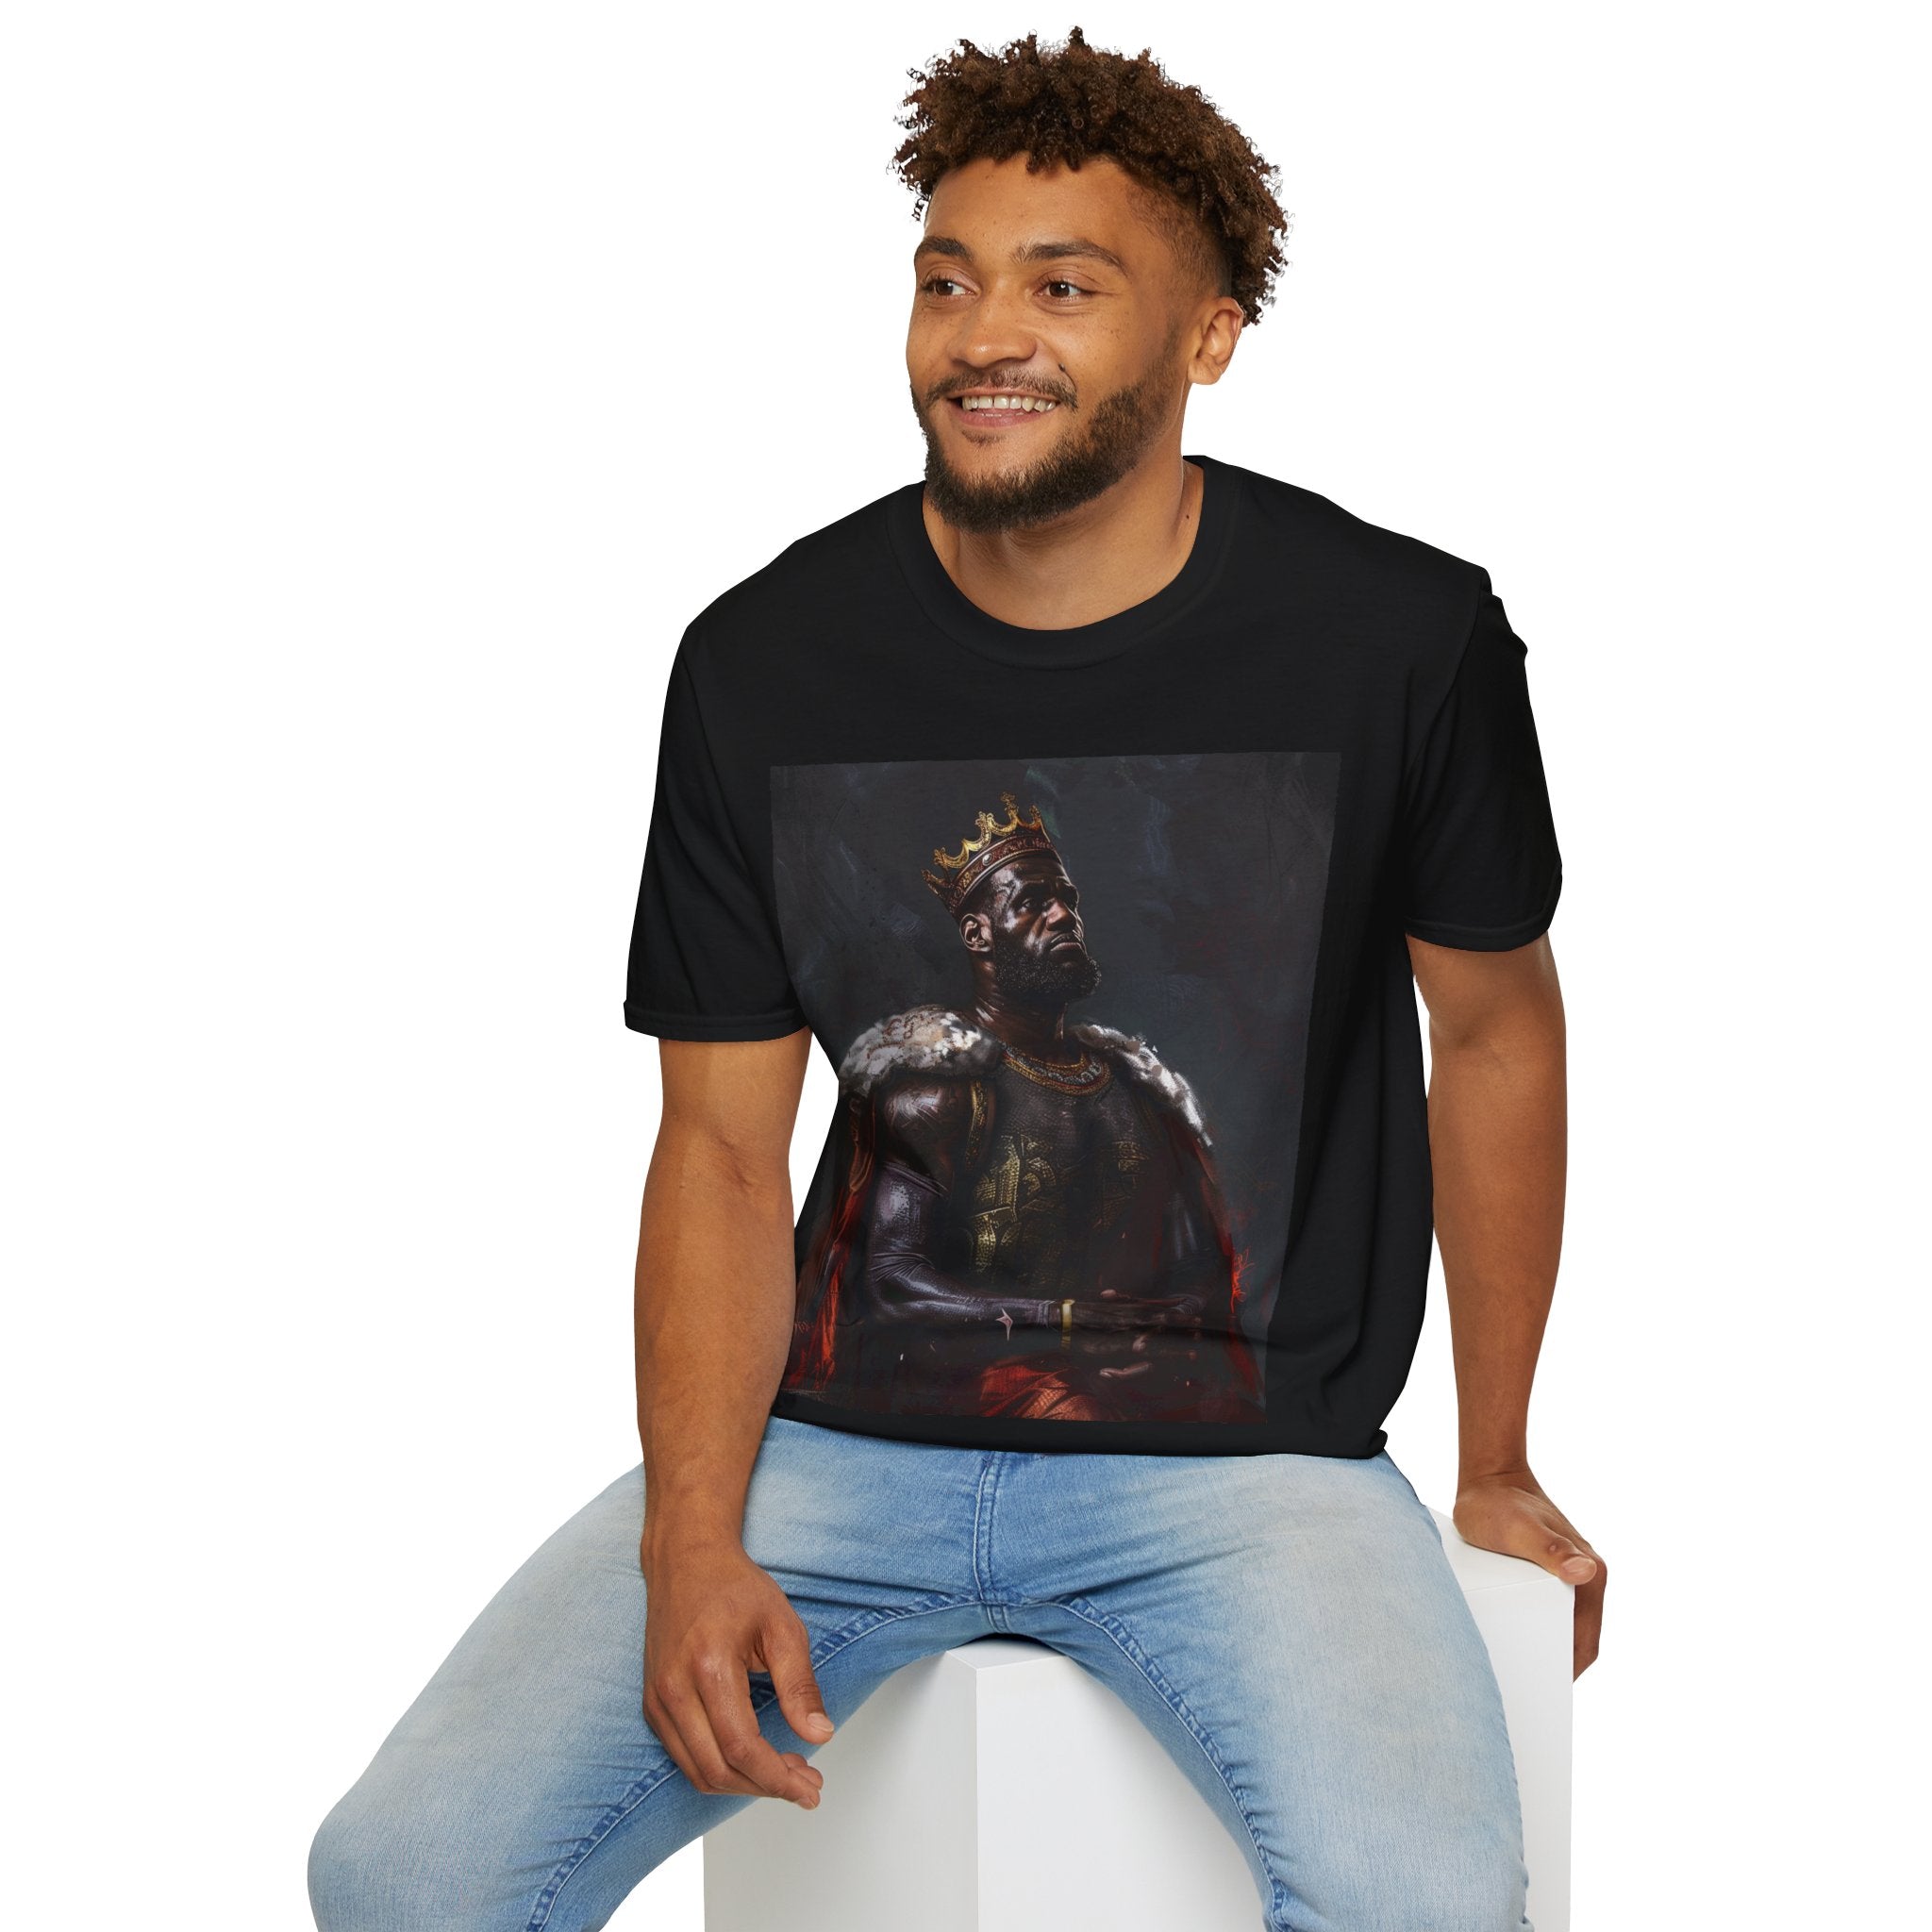 Regal Dribbles: King James Renaissance Portrait Unisex Softstyle T-Shirt - Elegance on the Court